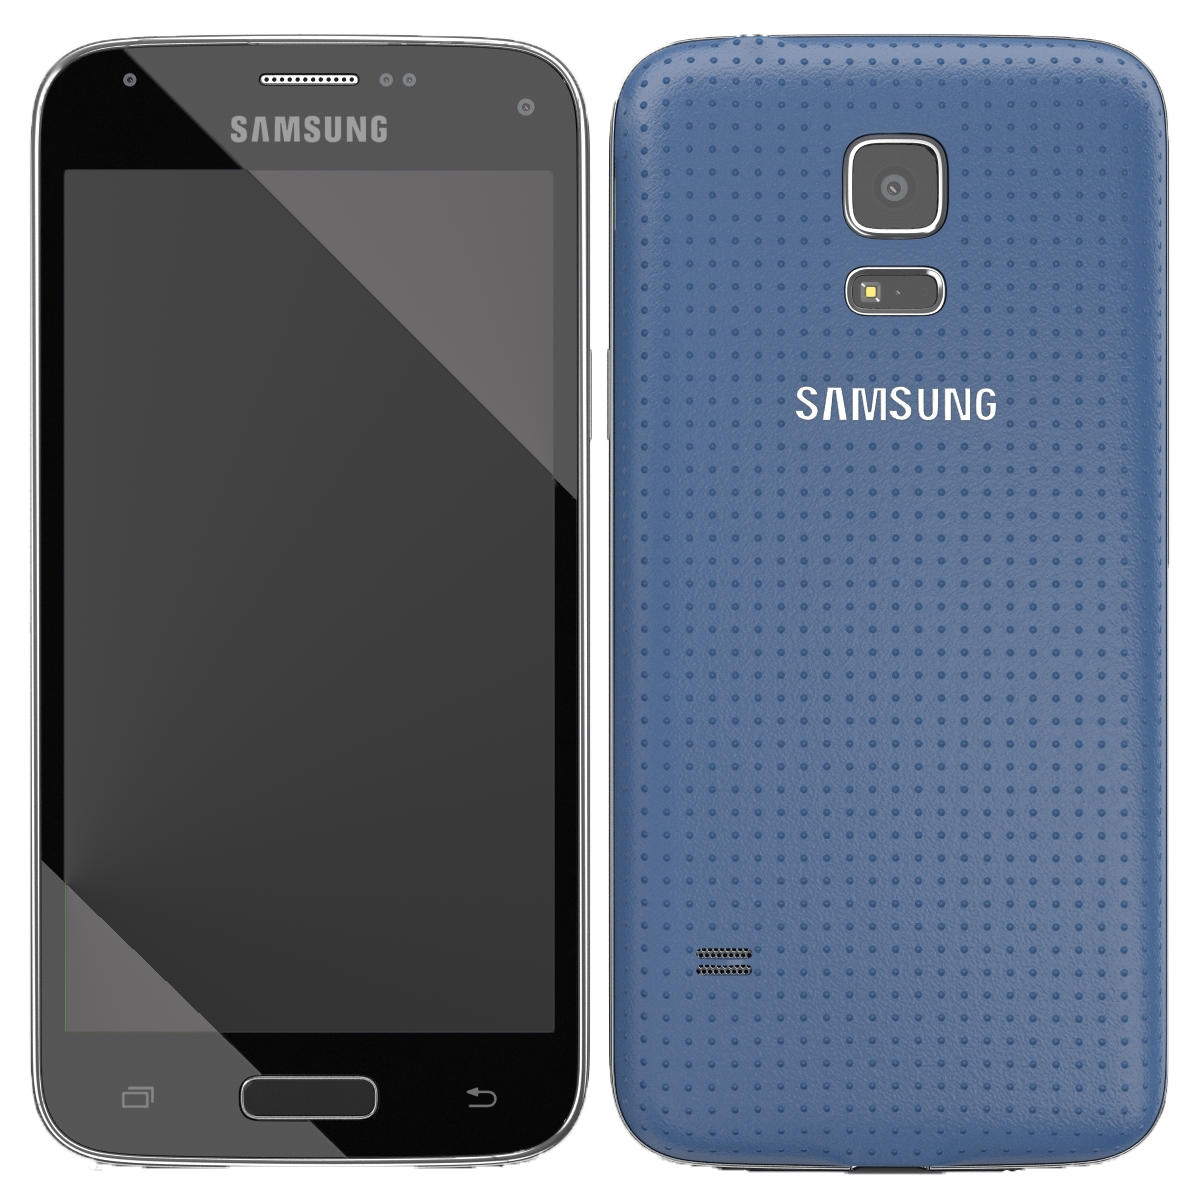 Samsung Galaxy S5 mini G800F blau - Ohne Vertrag